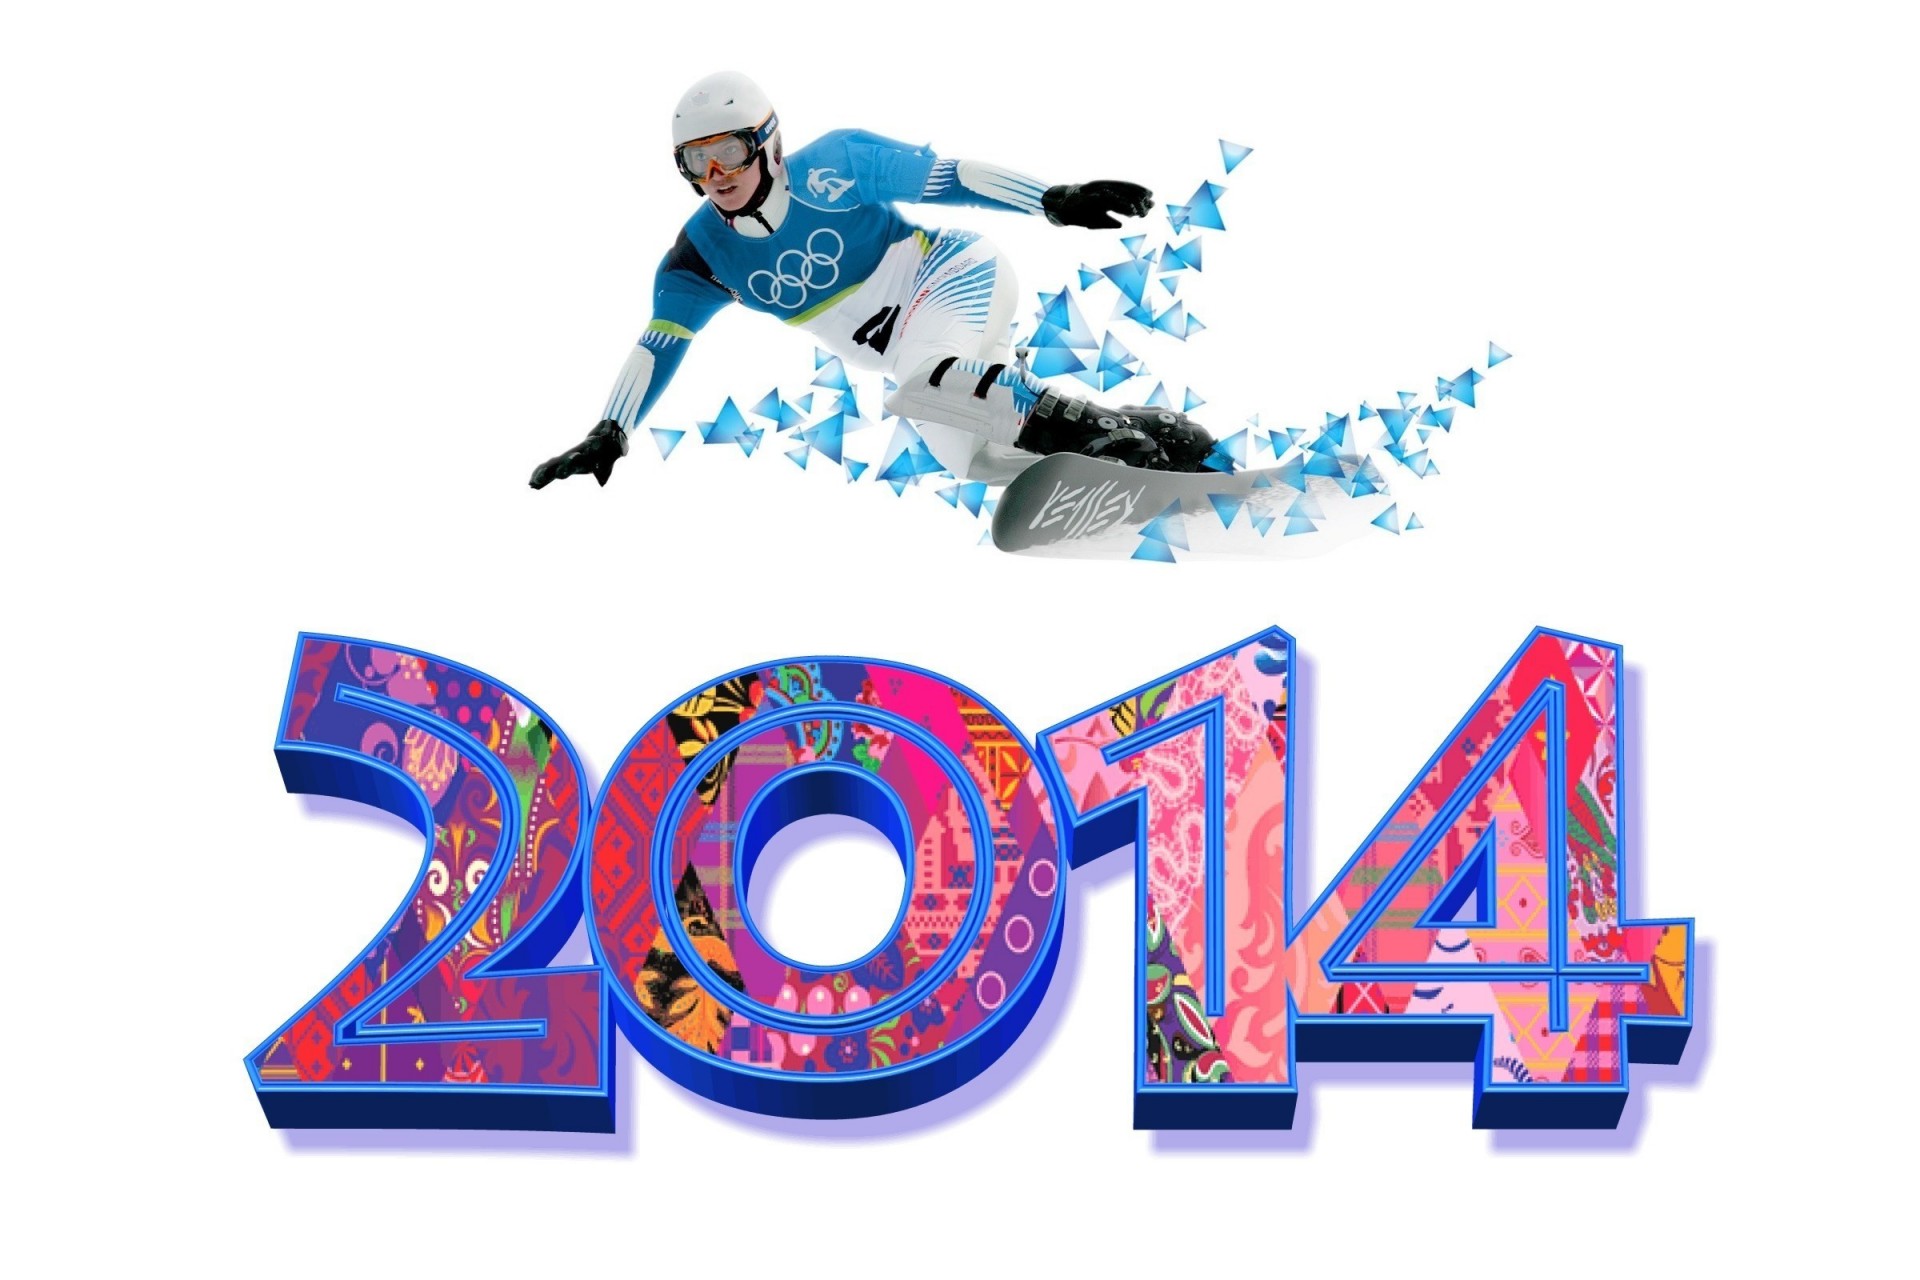 олимпиада праздник 2014 спорт